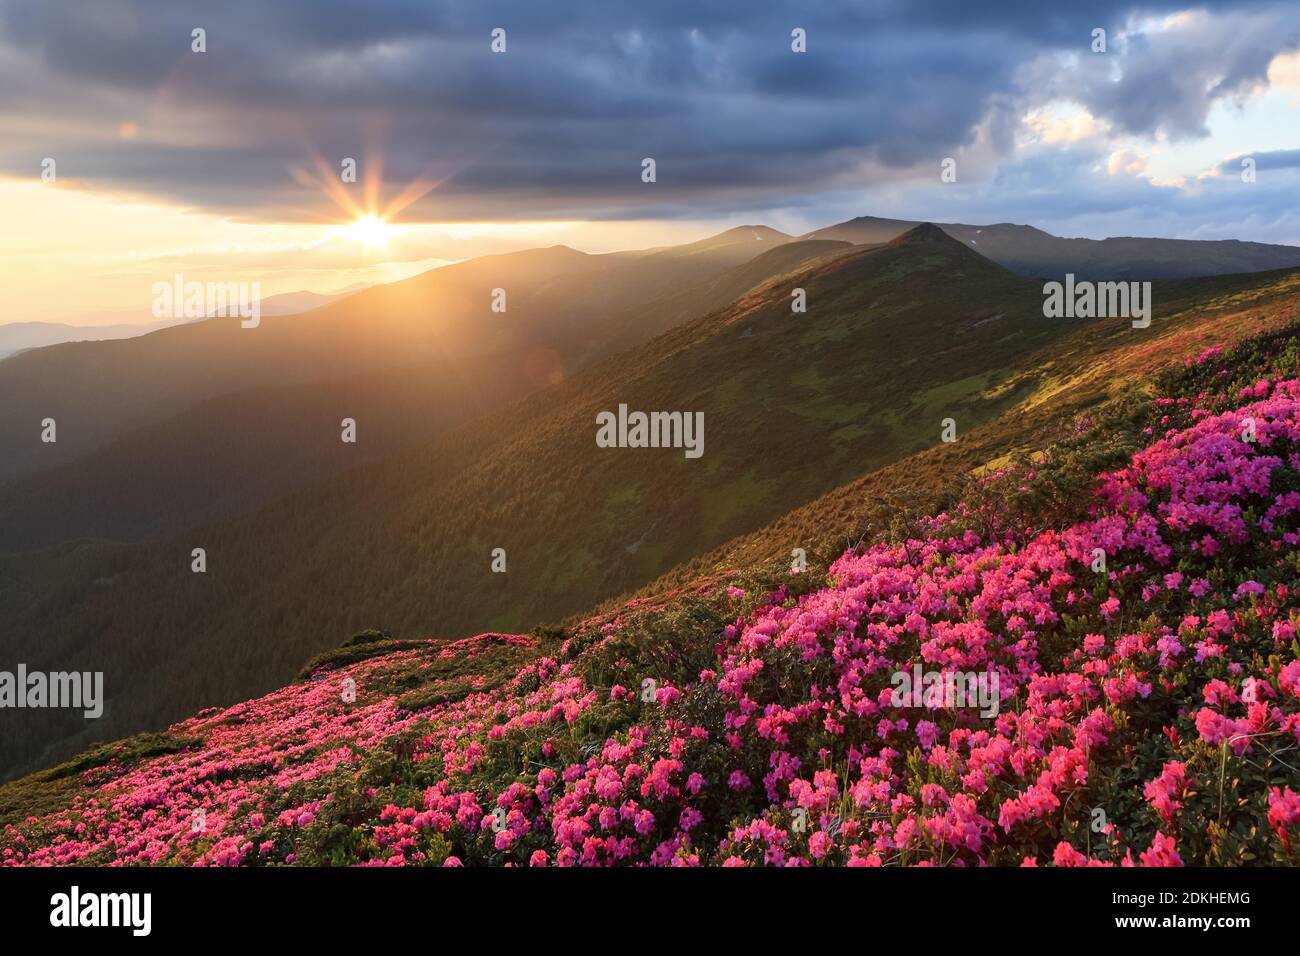 Paysage du coucher de soleil sur les hautes montagnes. Paysage de printemps incroyable. Une pelouse recouverte de fleurs de rhododendron rose. Ciel spectaculaire. La renaissance de Banque D'Images